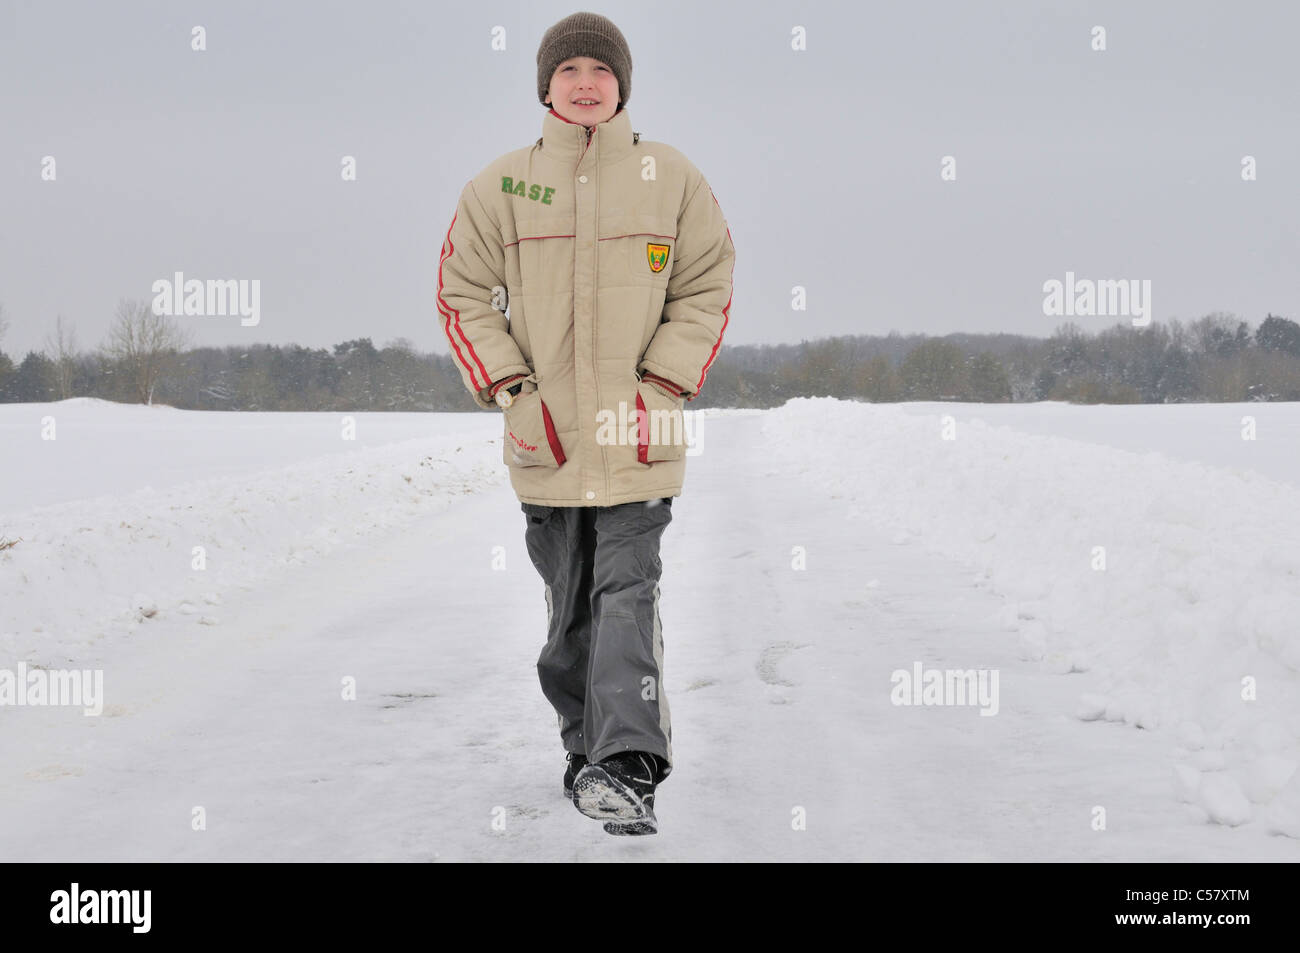 Gli inverni, ragazzo, a piedi, al di fuori, neve, cap, cappello, dieci anni, dieci, Baden-Württemberg, Germania, knave, individualmente, solo, campo n Foto Stock